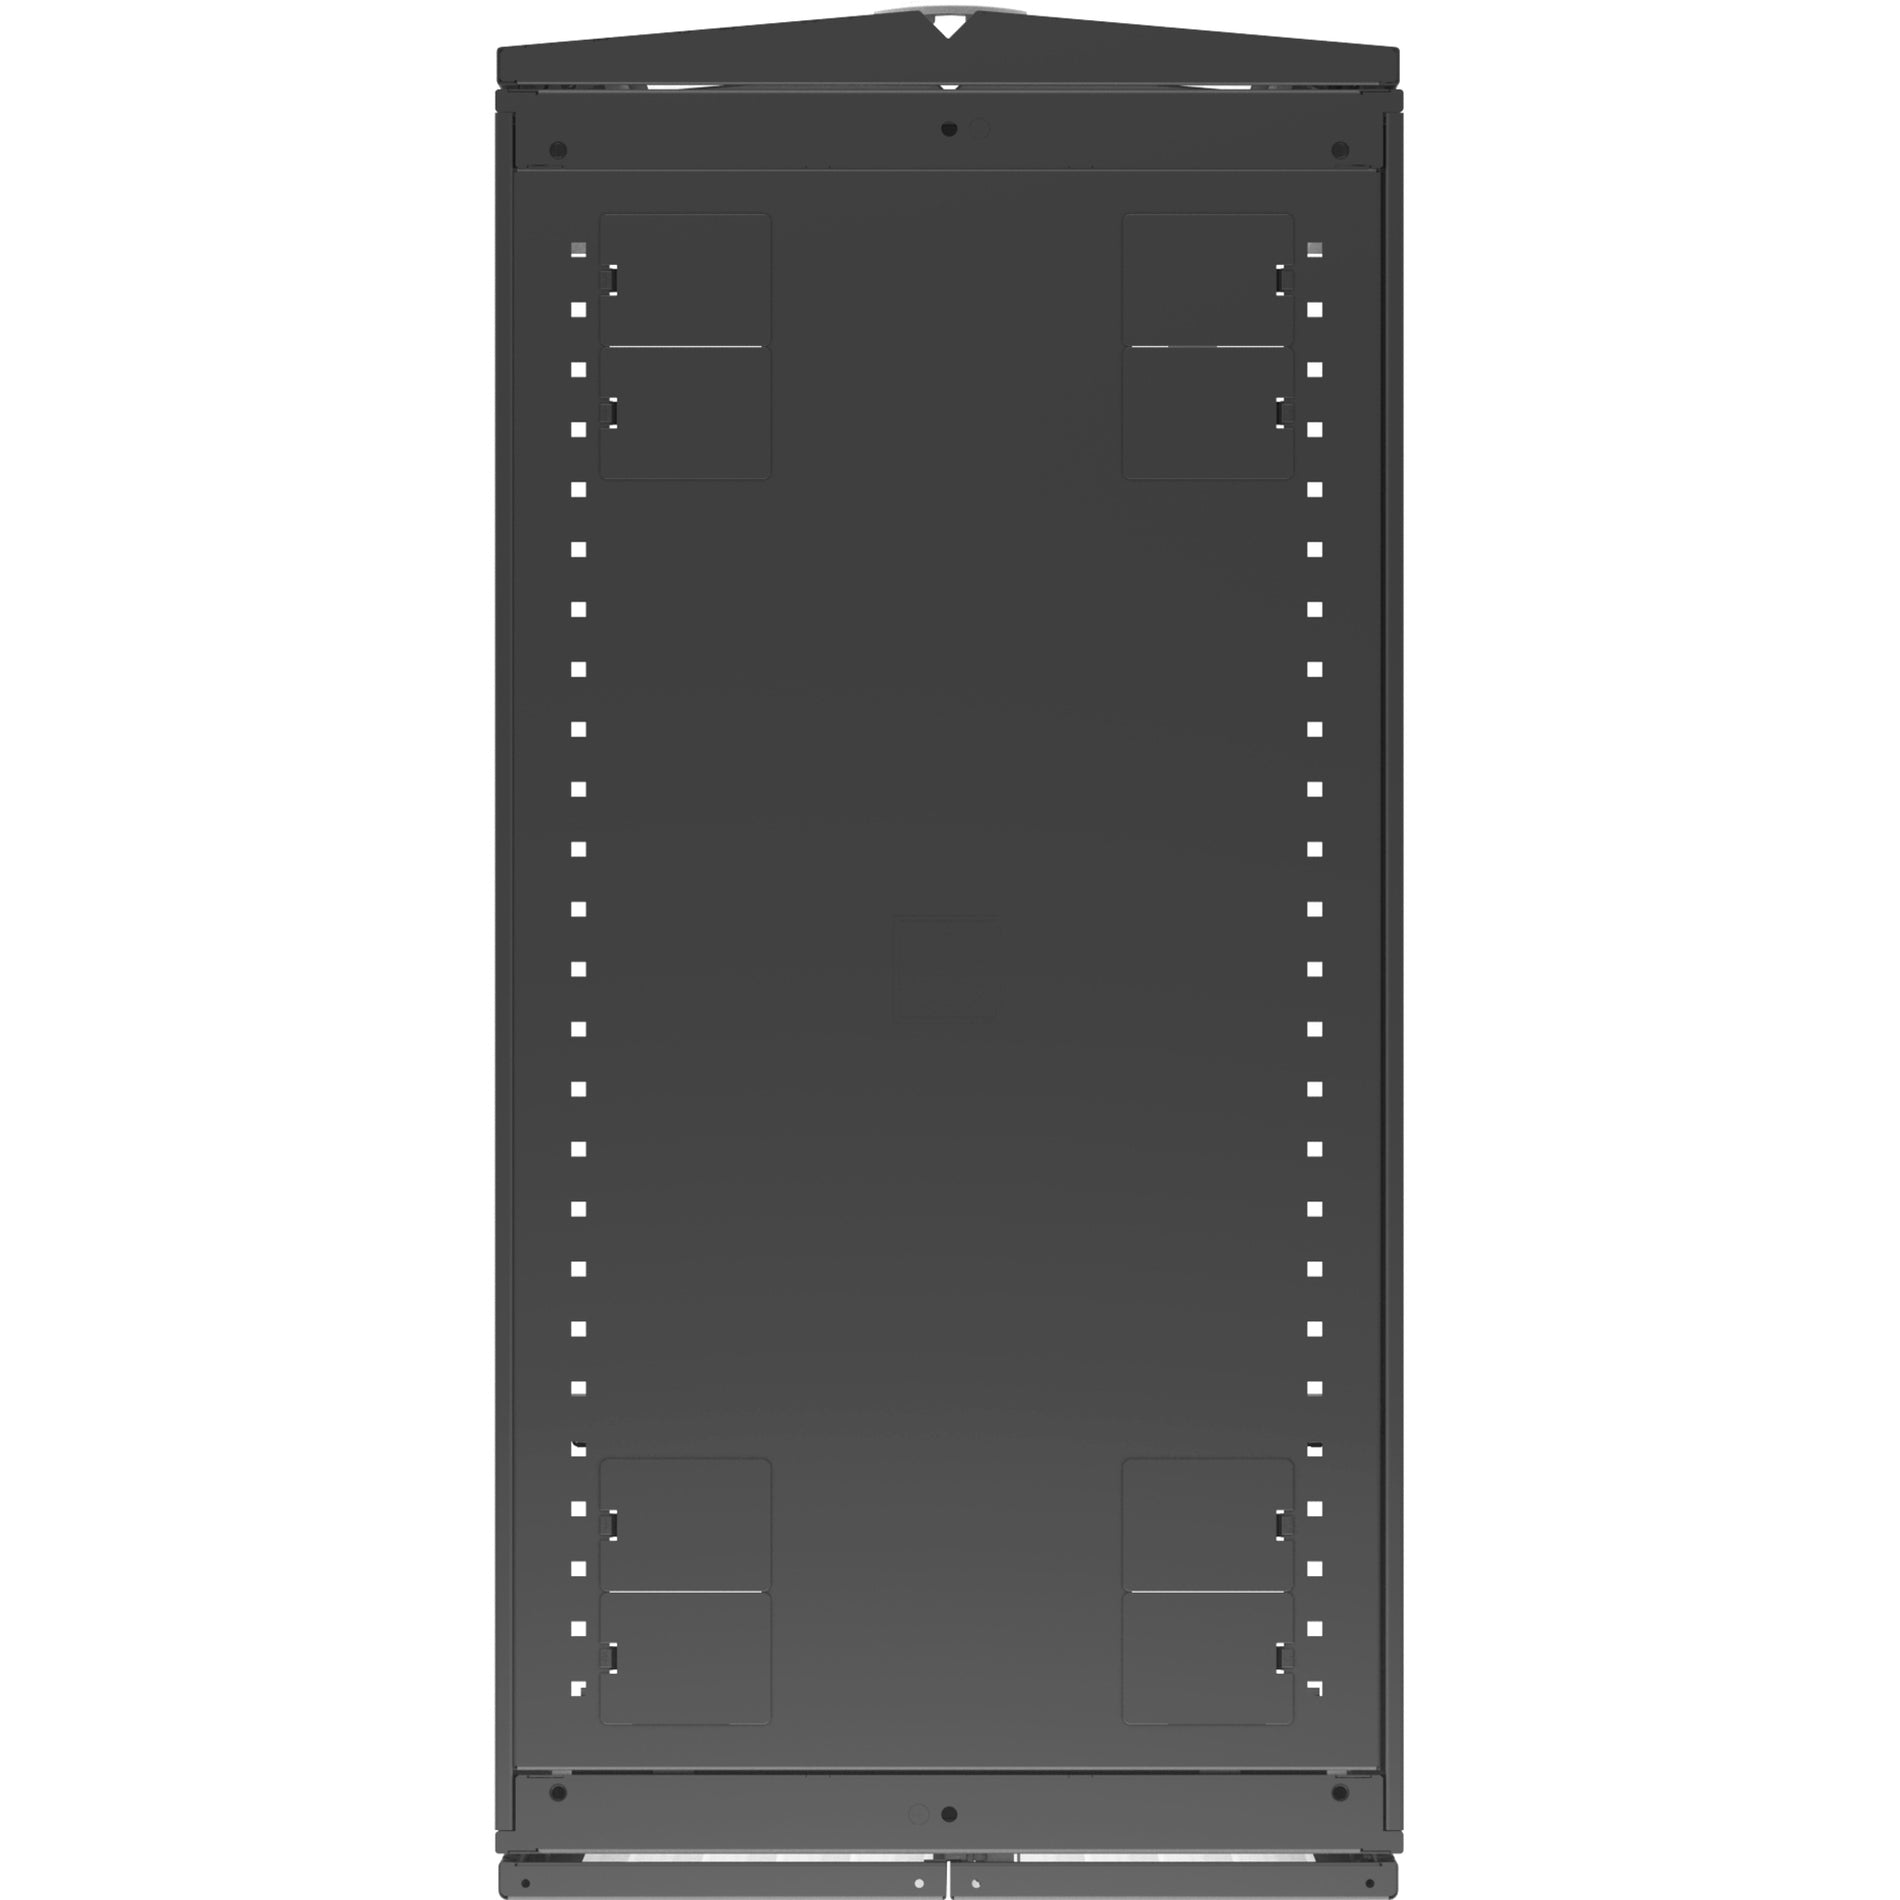 VERTIV VR3307 Vertiv VR Rack - 48U Server Rack Enclosure, 600x1200mm, 19-inch Cabinet